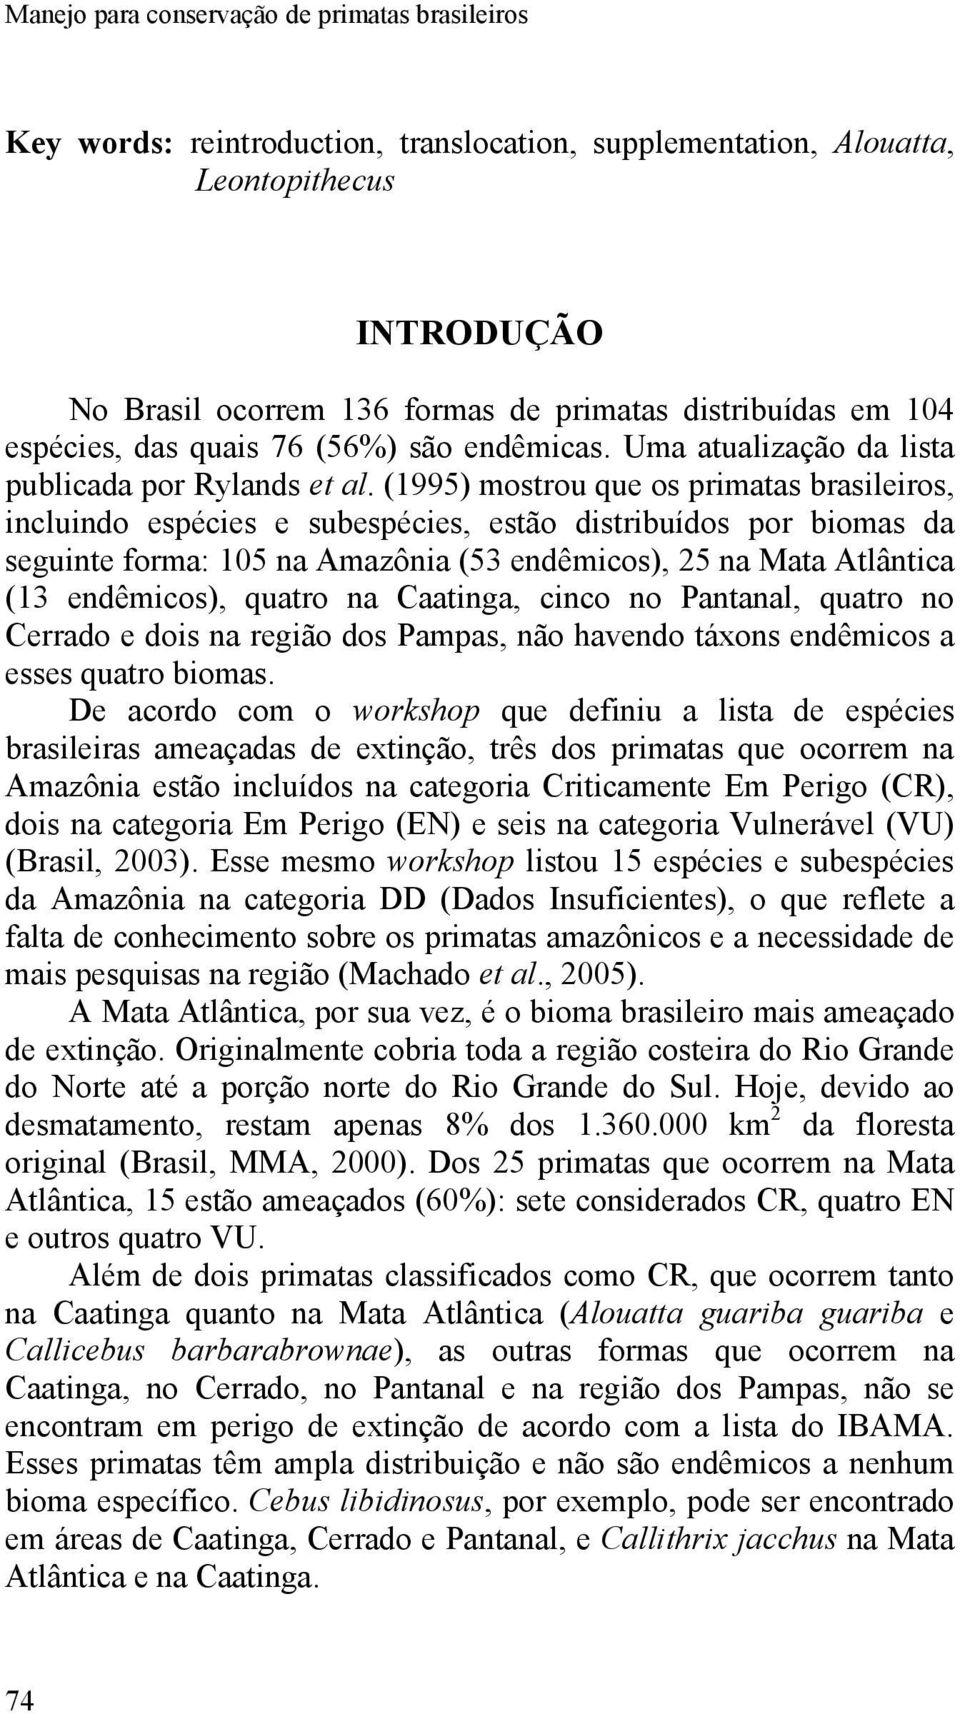 (1995) mostrou que os primatas brasileiros, incluindo espécies e subespécies, estão distribuídos por biomas da seguinte forma: 105 na Amazônia (53 endêmicos), 25 na Mata Atlântica (13 endêmicos),